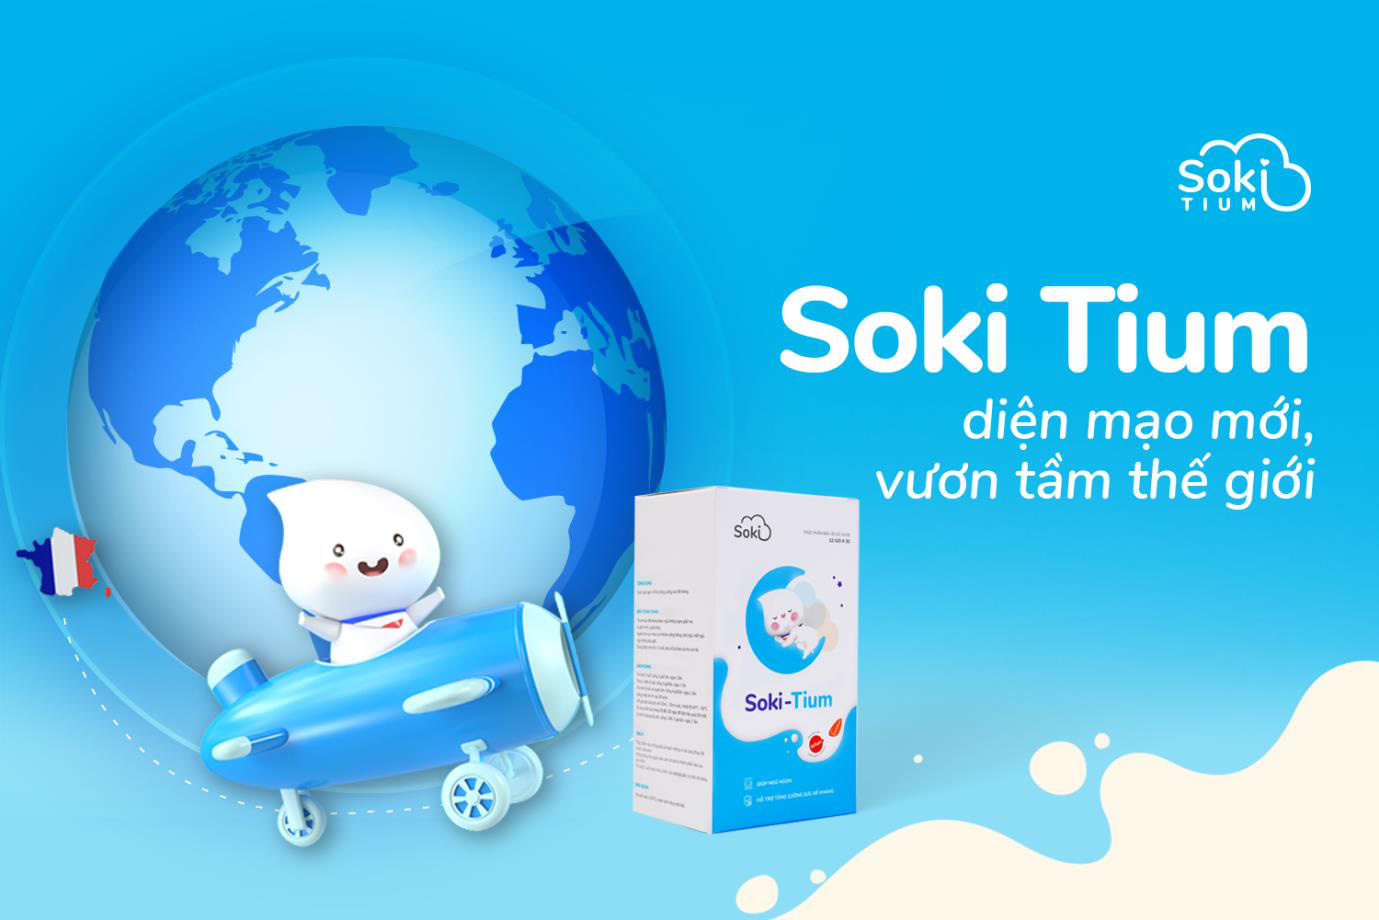 Soki Tium “thay áo mới”, hứa hẹn mang đến trải nghiệm tối ưu cho khách hàng - Ảnh 1.